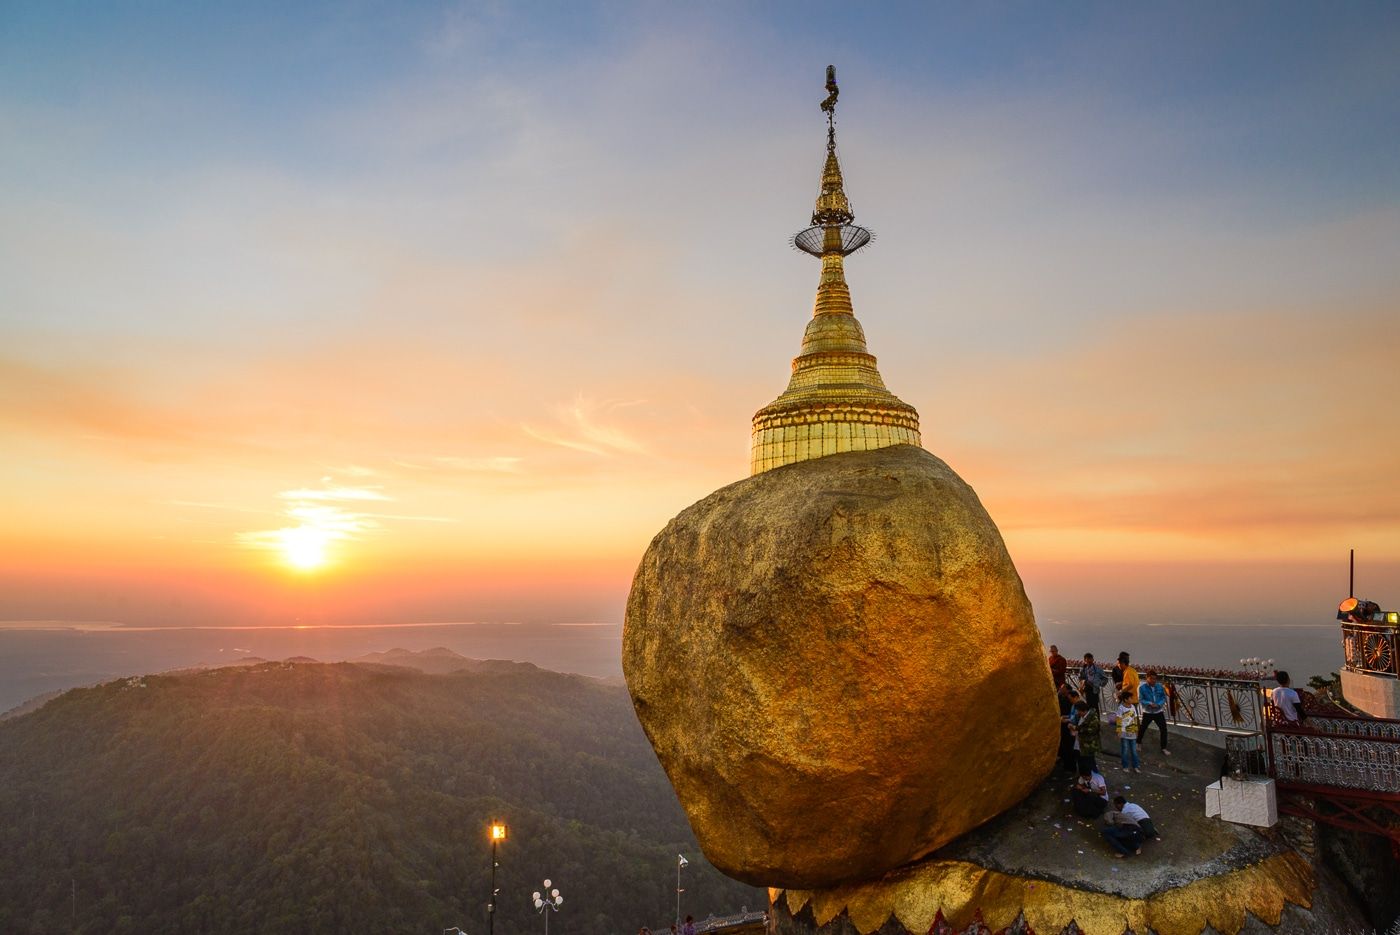 The Golden Rock in Myanmar